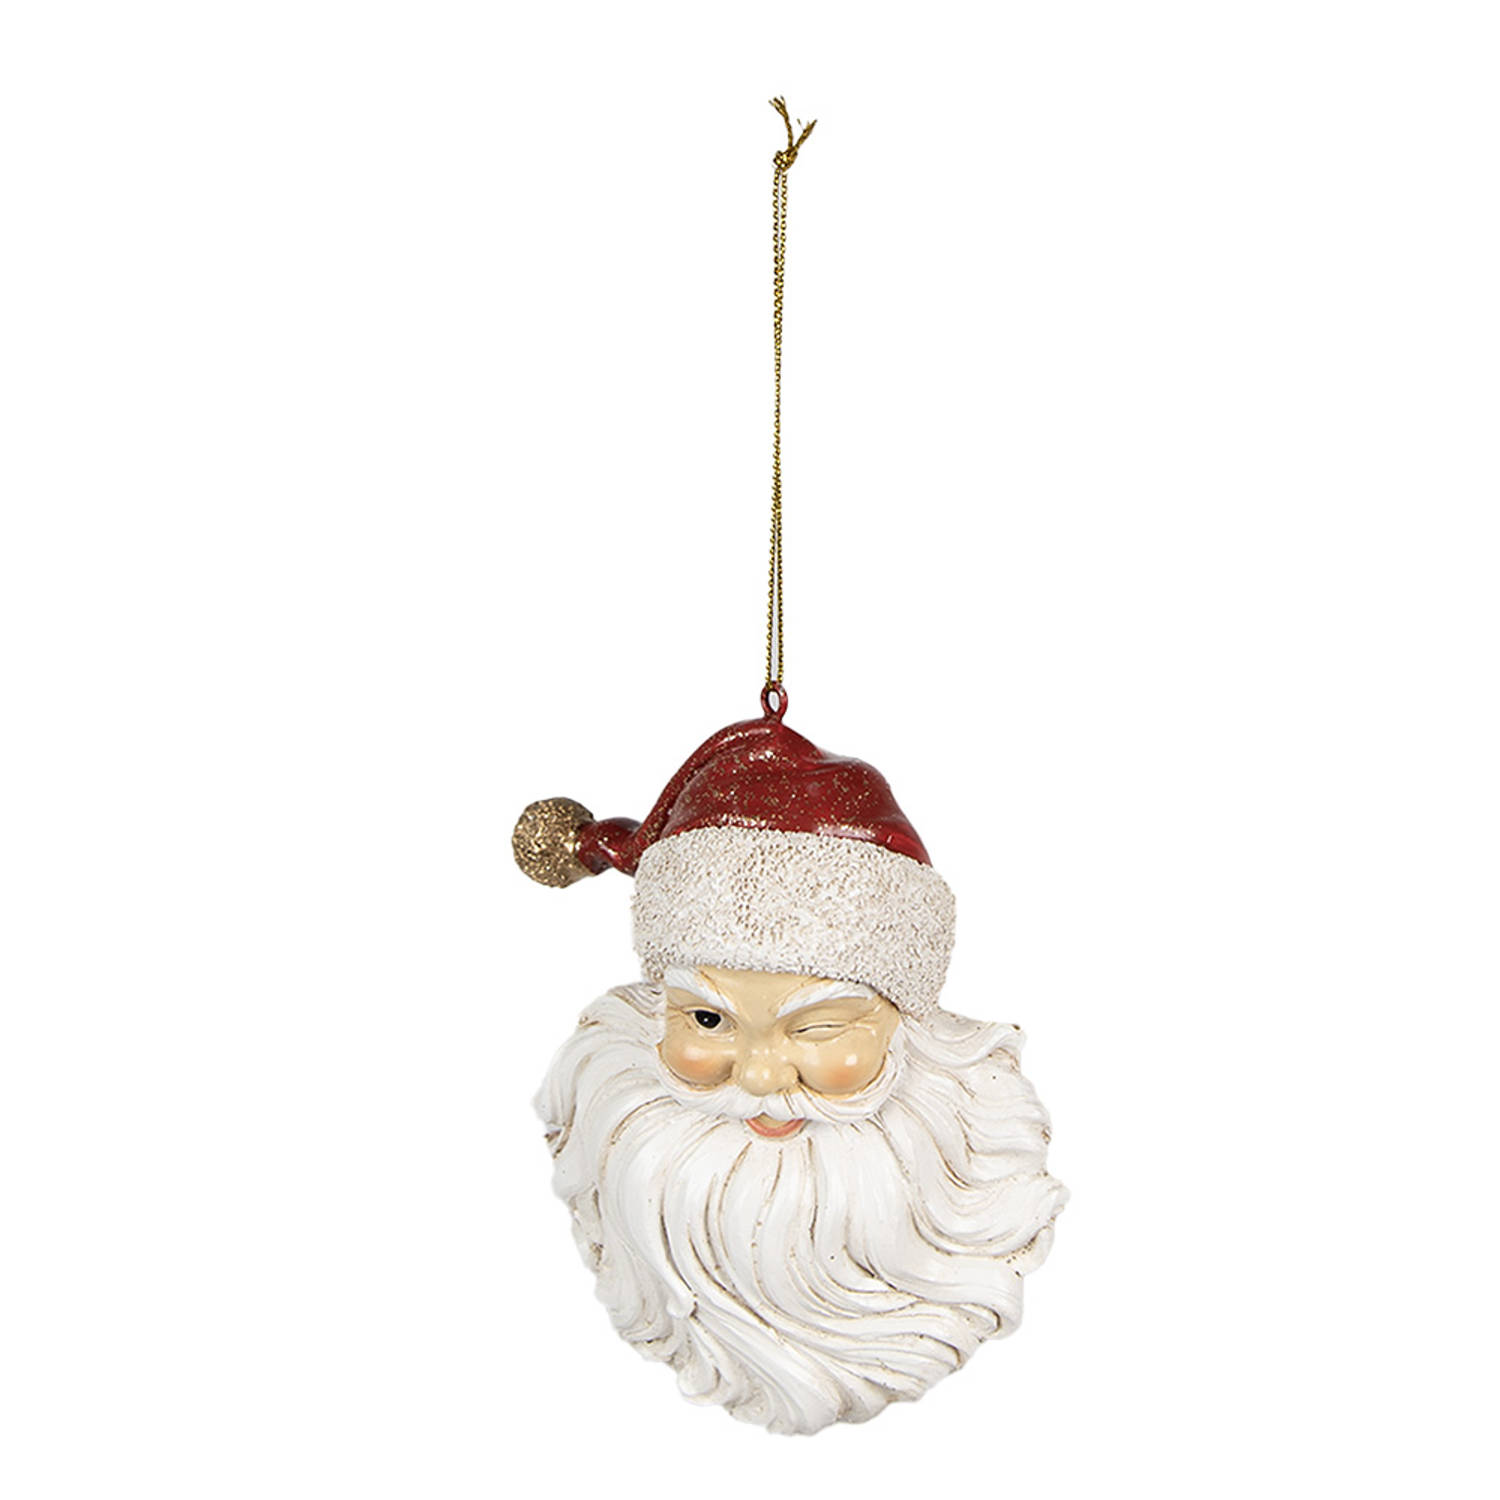 HAES DECO - Kersthanger Kerstman - Formaat 8x5x12 cm - Kleur Wit - Materiaal Polyresin - Kerstversiering, Kerstdecoratie, Decoratie Hanger, Kerstboomversiering